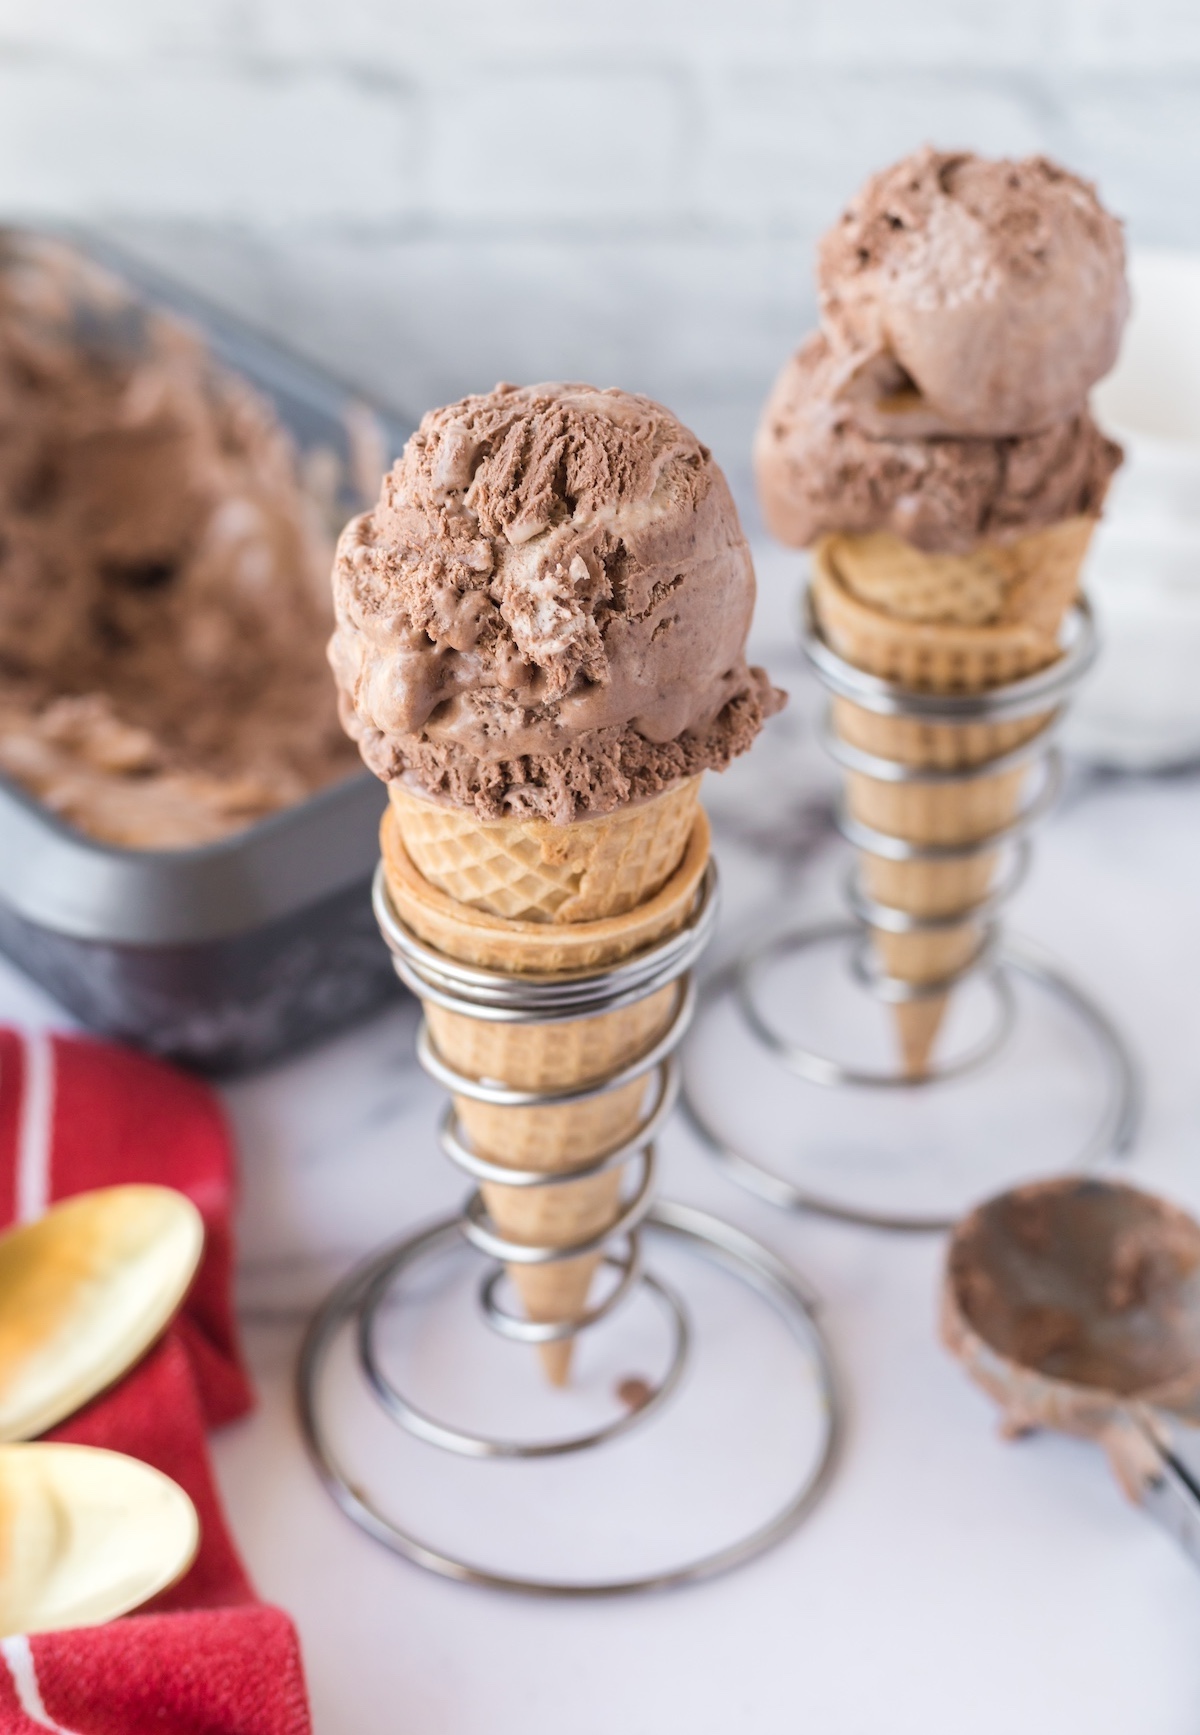 ice cream chocolate caramel in cones